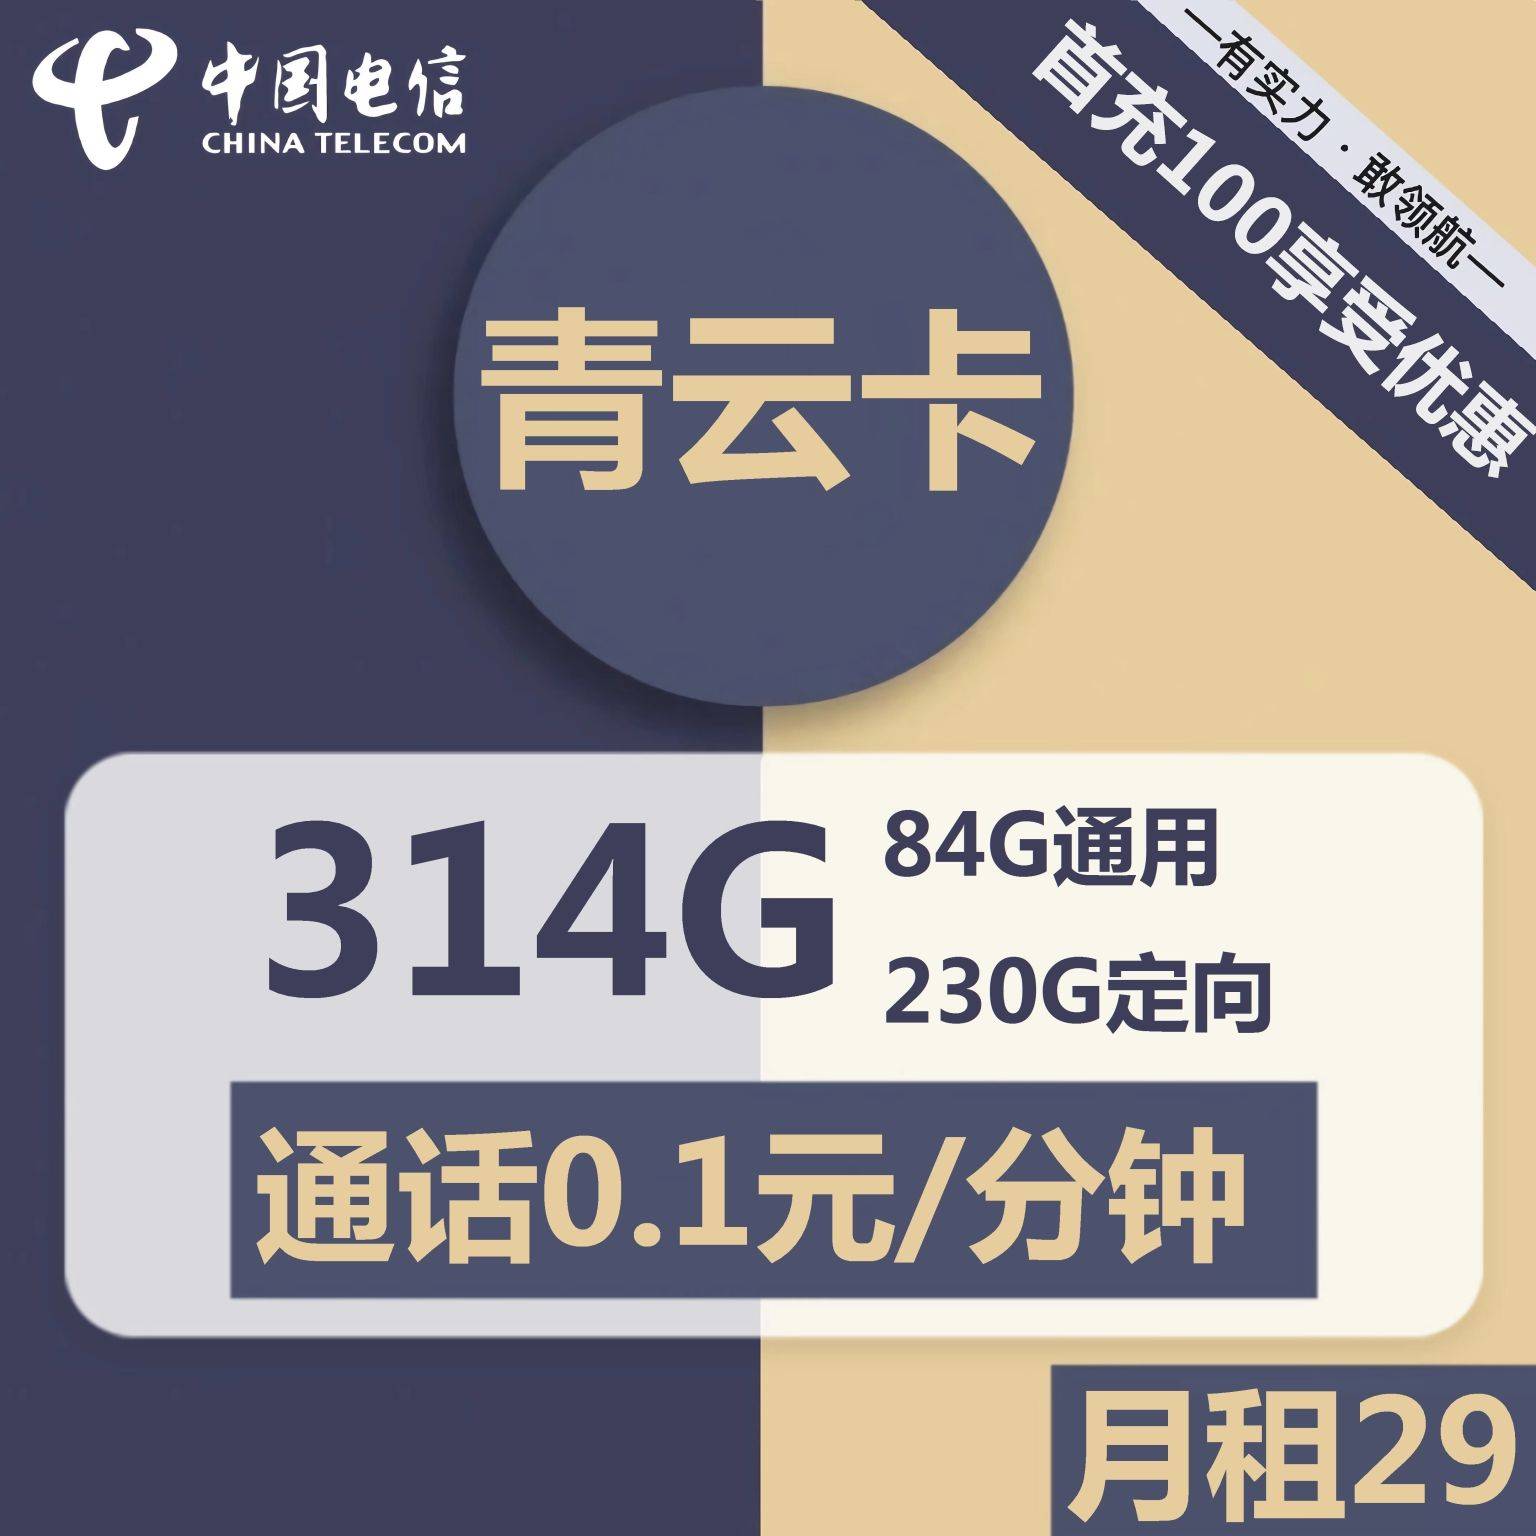 广东电信青云卡29元包84G通用+230G定向+通话0.1元/分钟